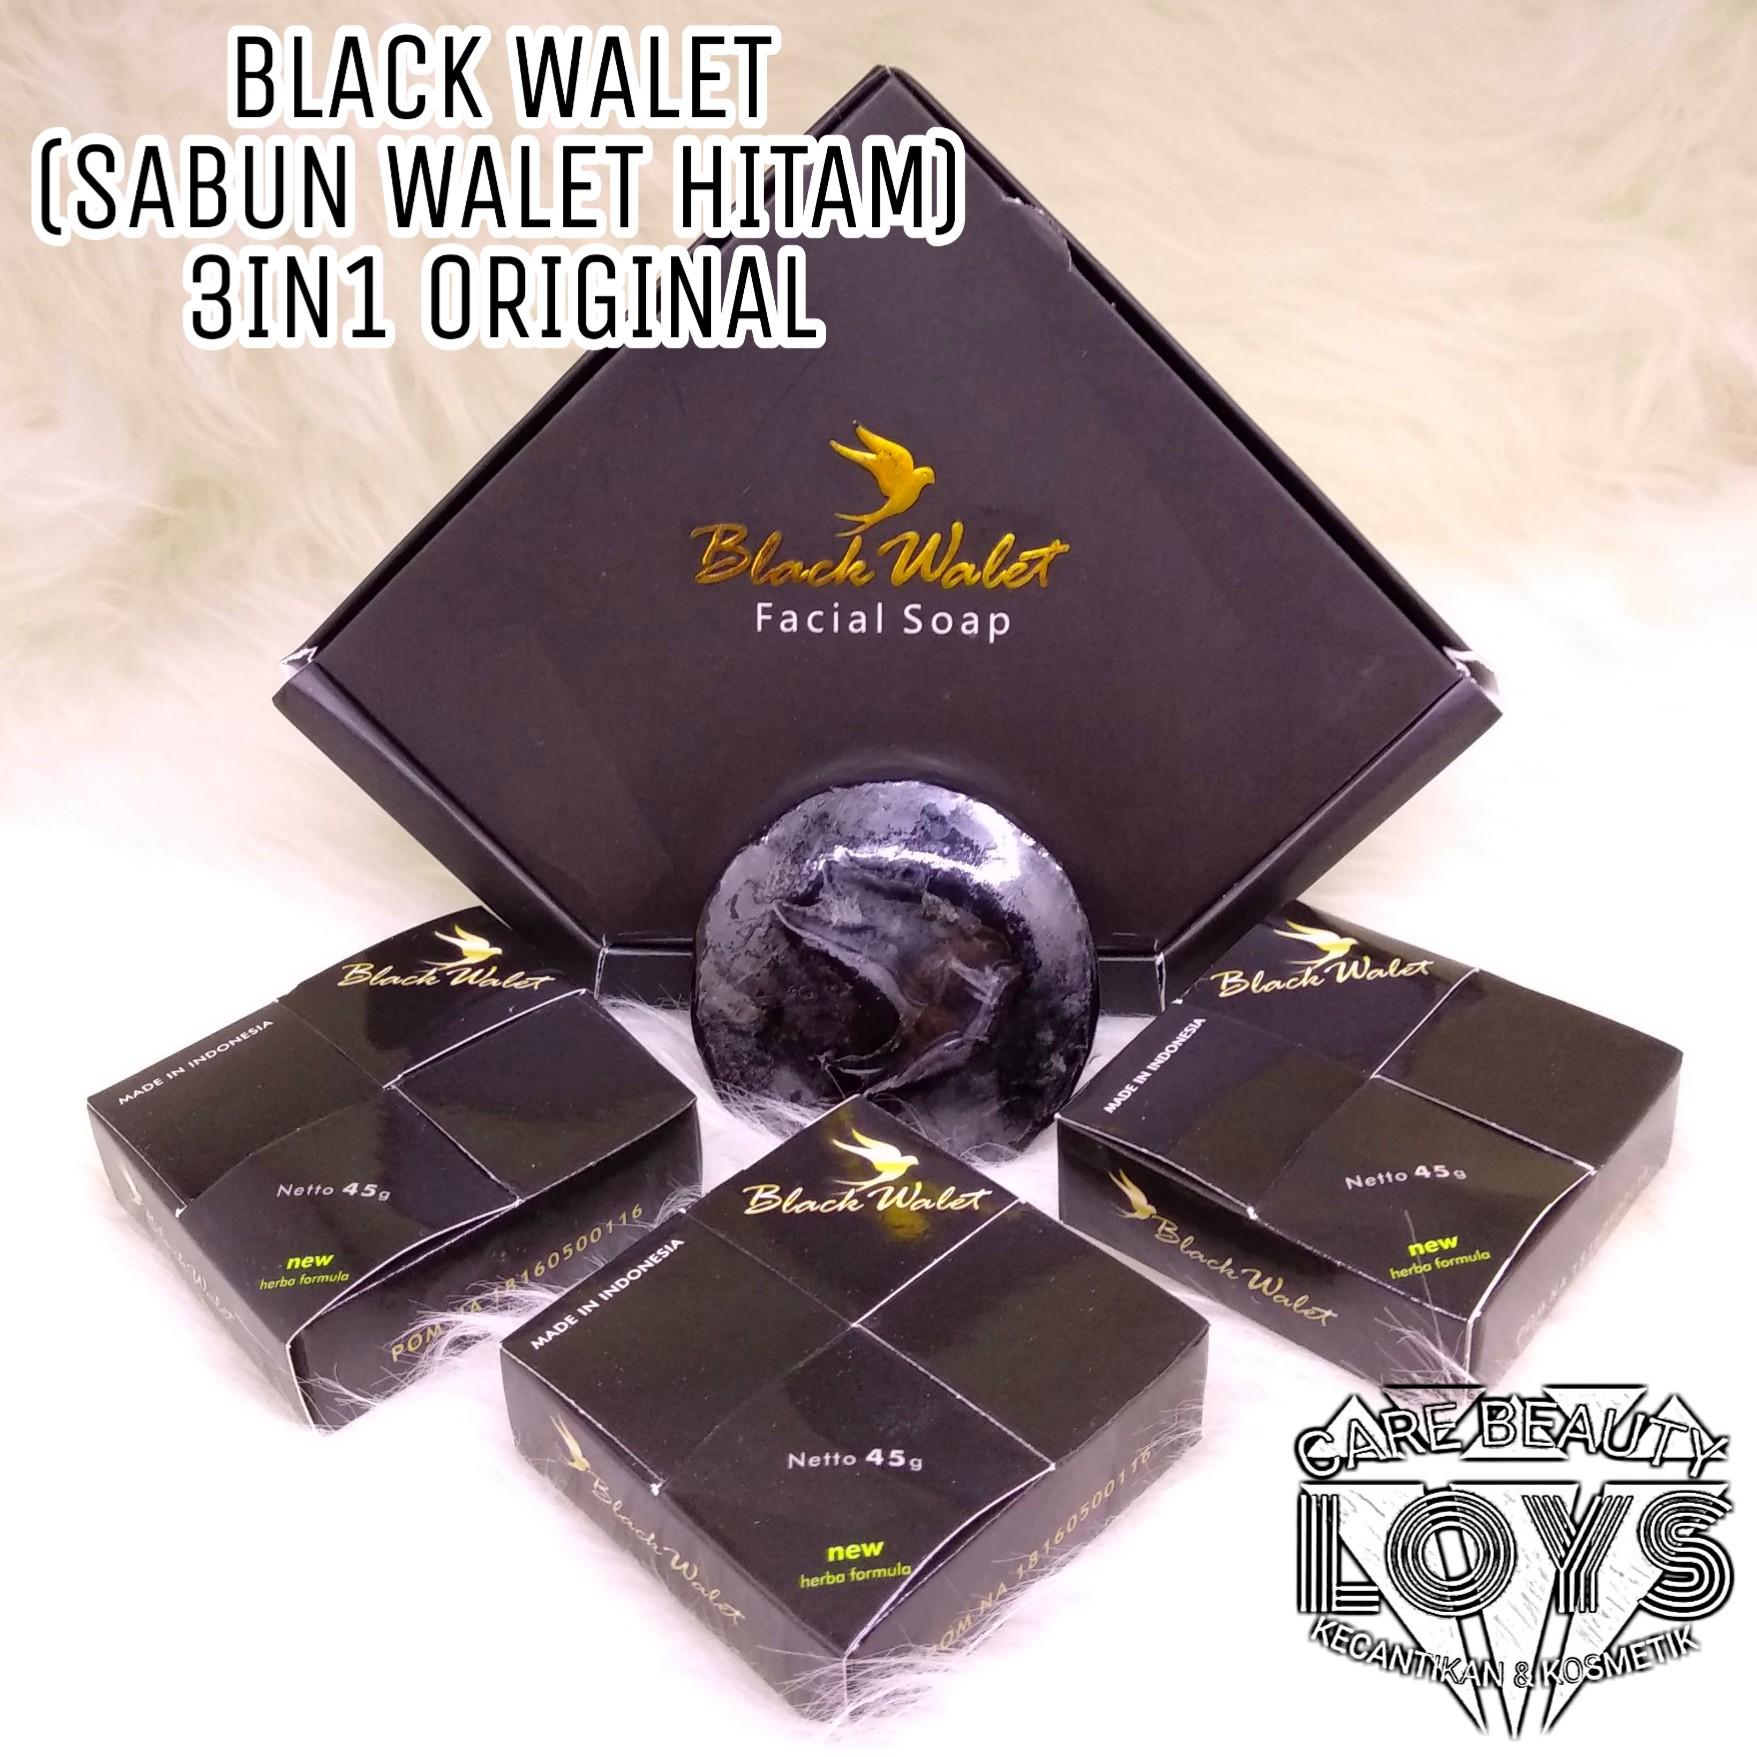 Black Walet Facial Soap 1 BOX isi 3 ORIGINAL - Sabun Black Walet Rajawali Emas Facial Soap - Sabun Walet